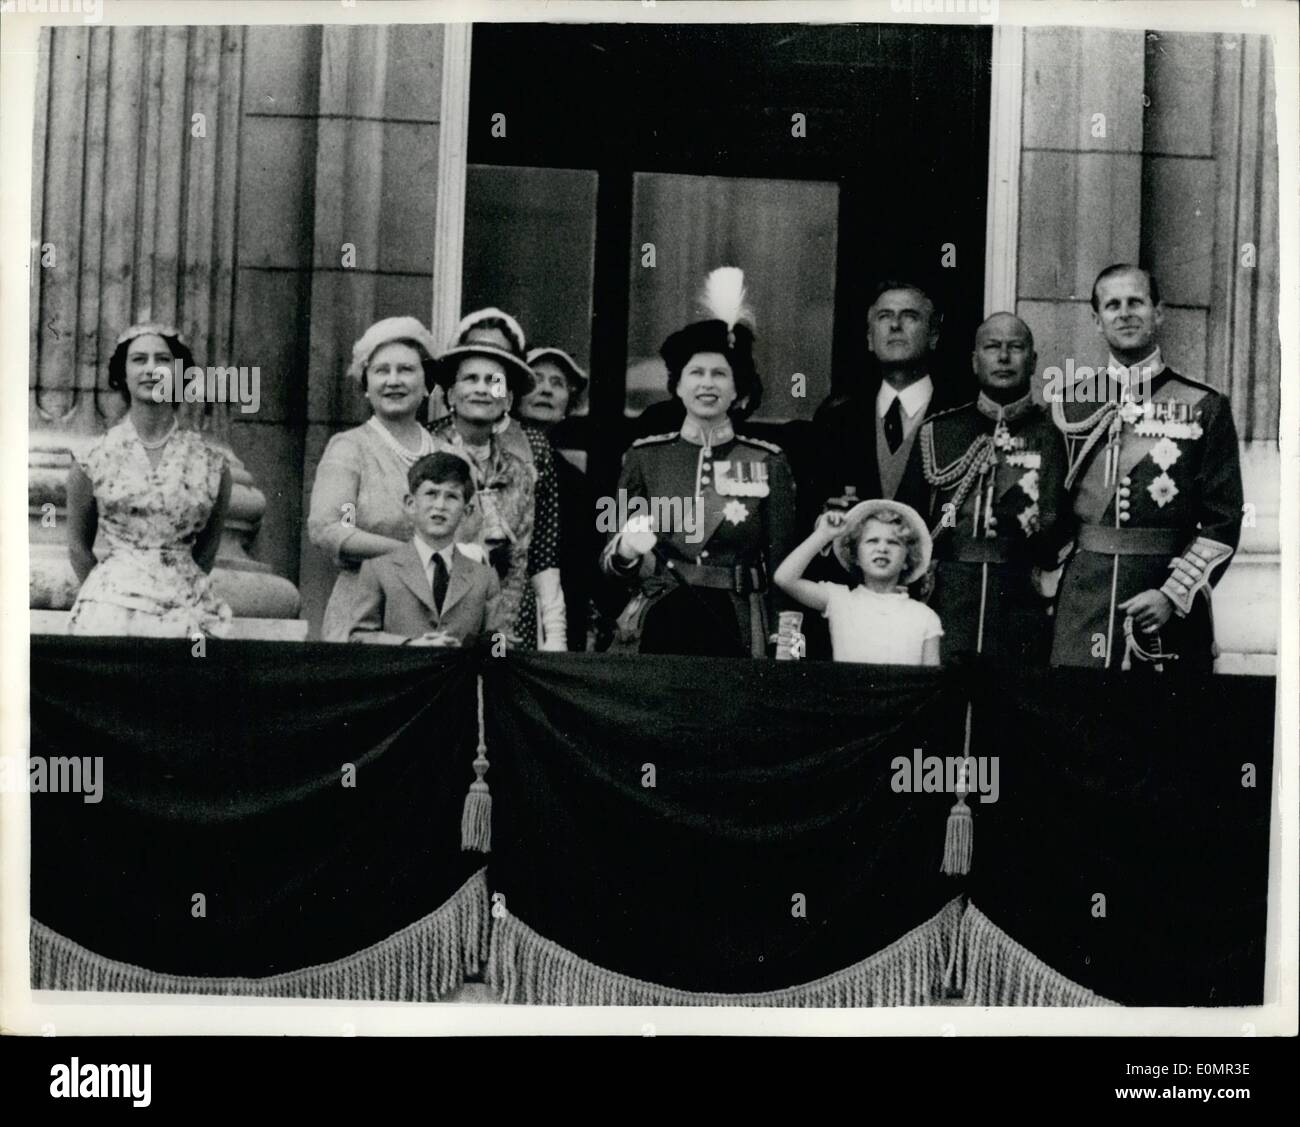 Mai 05, 1956 - regardez les Royals survol : Sa Majesté la Reine a pris le salut du balcon du palais de Buckingham, au défilé d'aujourd'hui de 18 Shackleton quadrimoteur aéronef maritime à longue portée de la R.A.F. Le Coastal Command, pour marquer l'anniversaire officiel de Sa Majesté. Le défilé a suivi la cérémonie traditionnelle parade la couleur sur Horse Guards Parade. La photo montre la vue en regardant le défilé sur le balcon de Buckingham Palace, de gauche, la princesse Margaret, la reine mère, la duchesse de Gloucester ; La Reine Elizabeth ; Earl Mountbatten Banque D'Images